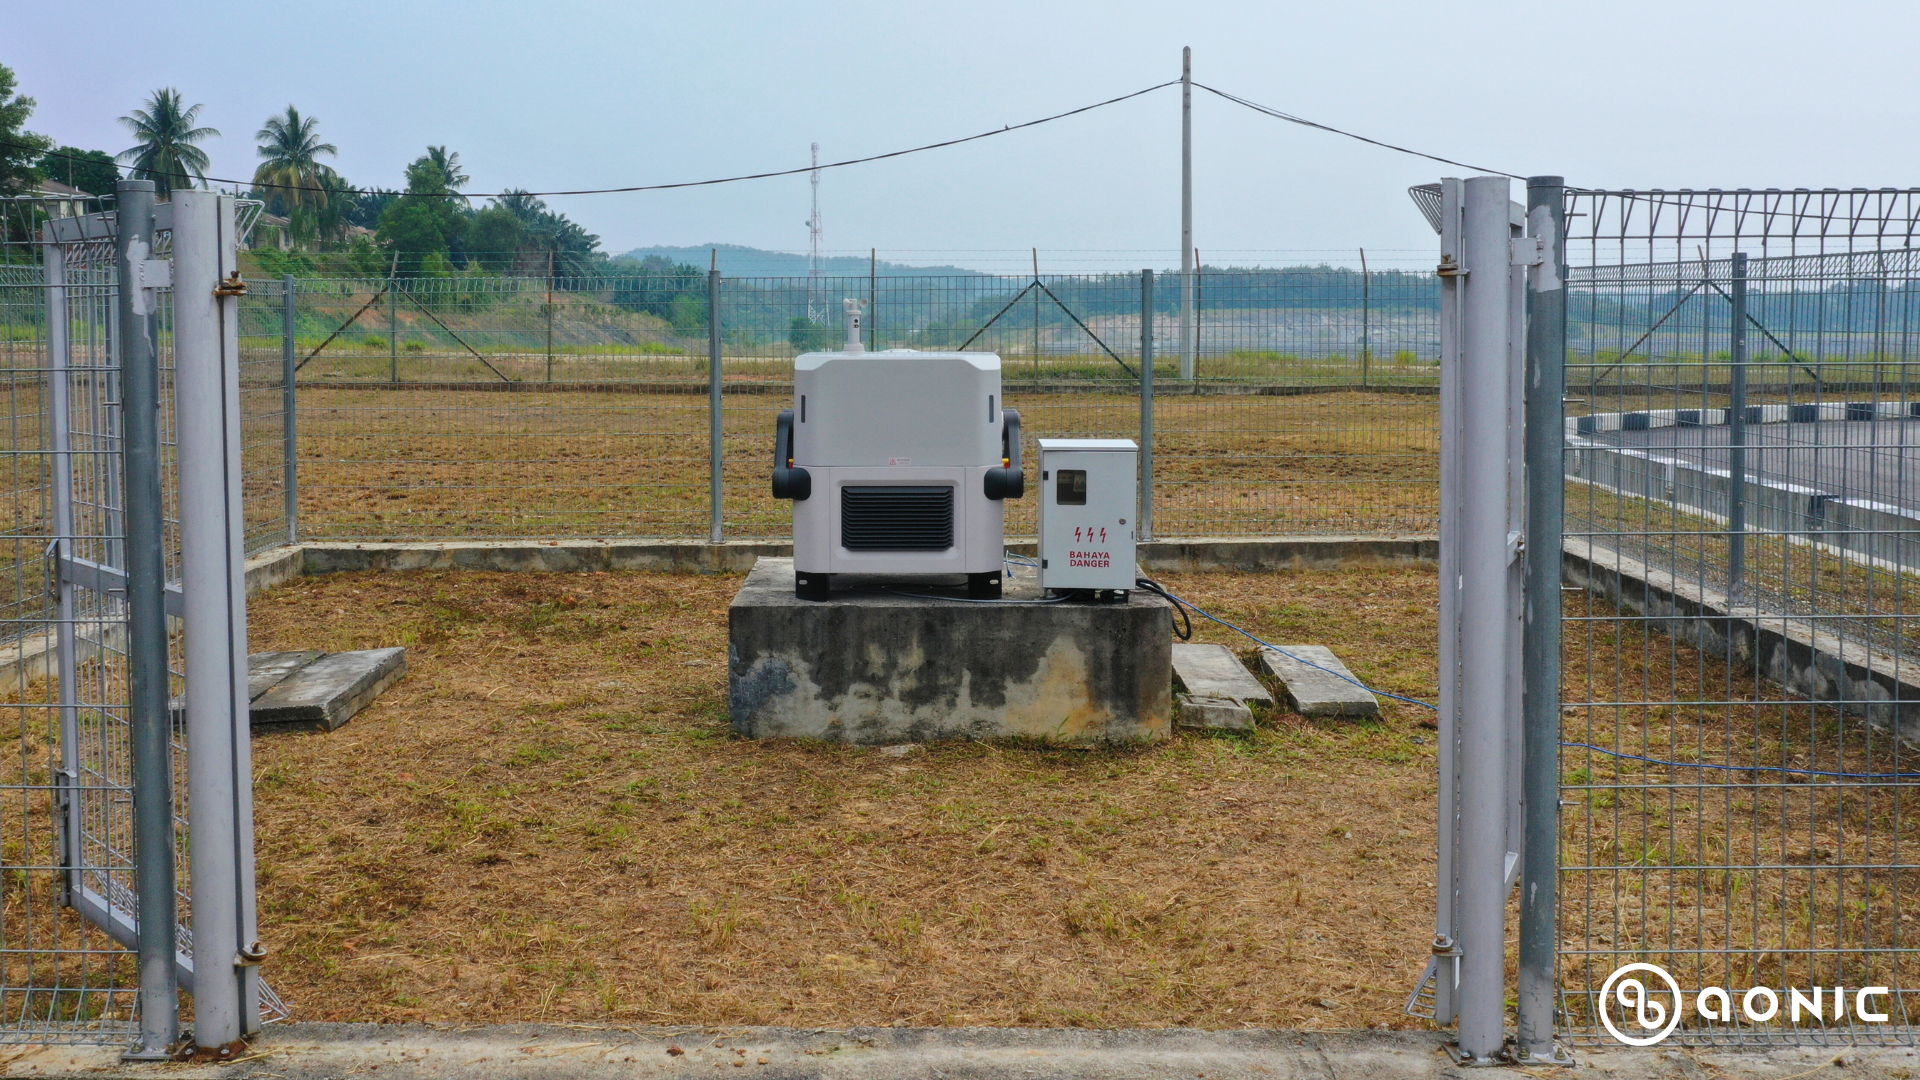 DJI Dock installed in a solar farm site